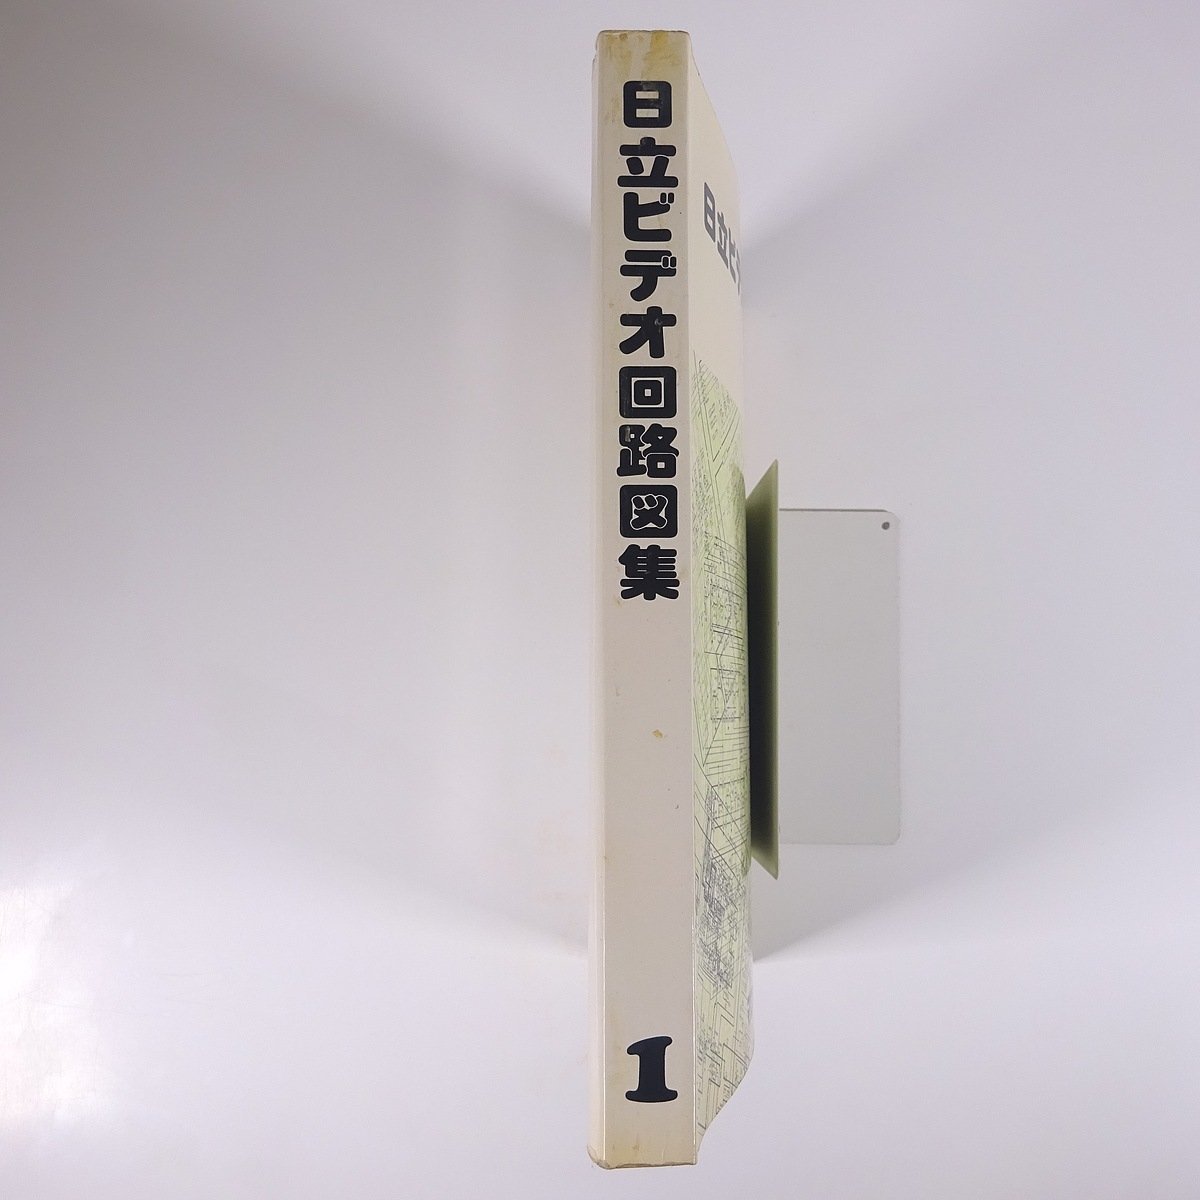 日立ビデオ回路図集 No.1 マスタックス VHS HITACHI 日立家電販売株式会社 日立製作所 1980 大型本 電子回路 ビデオデッキ ビデオテープ_画像3